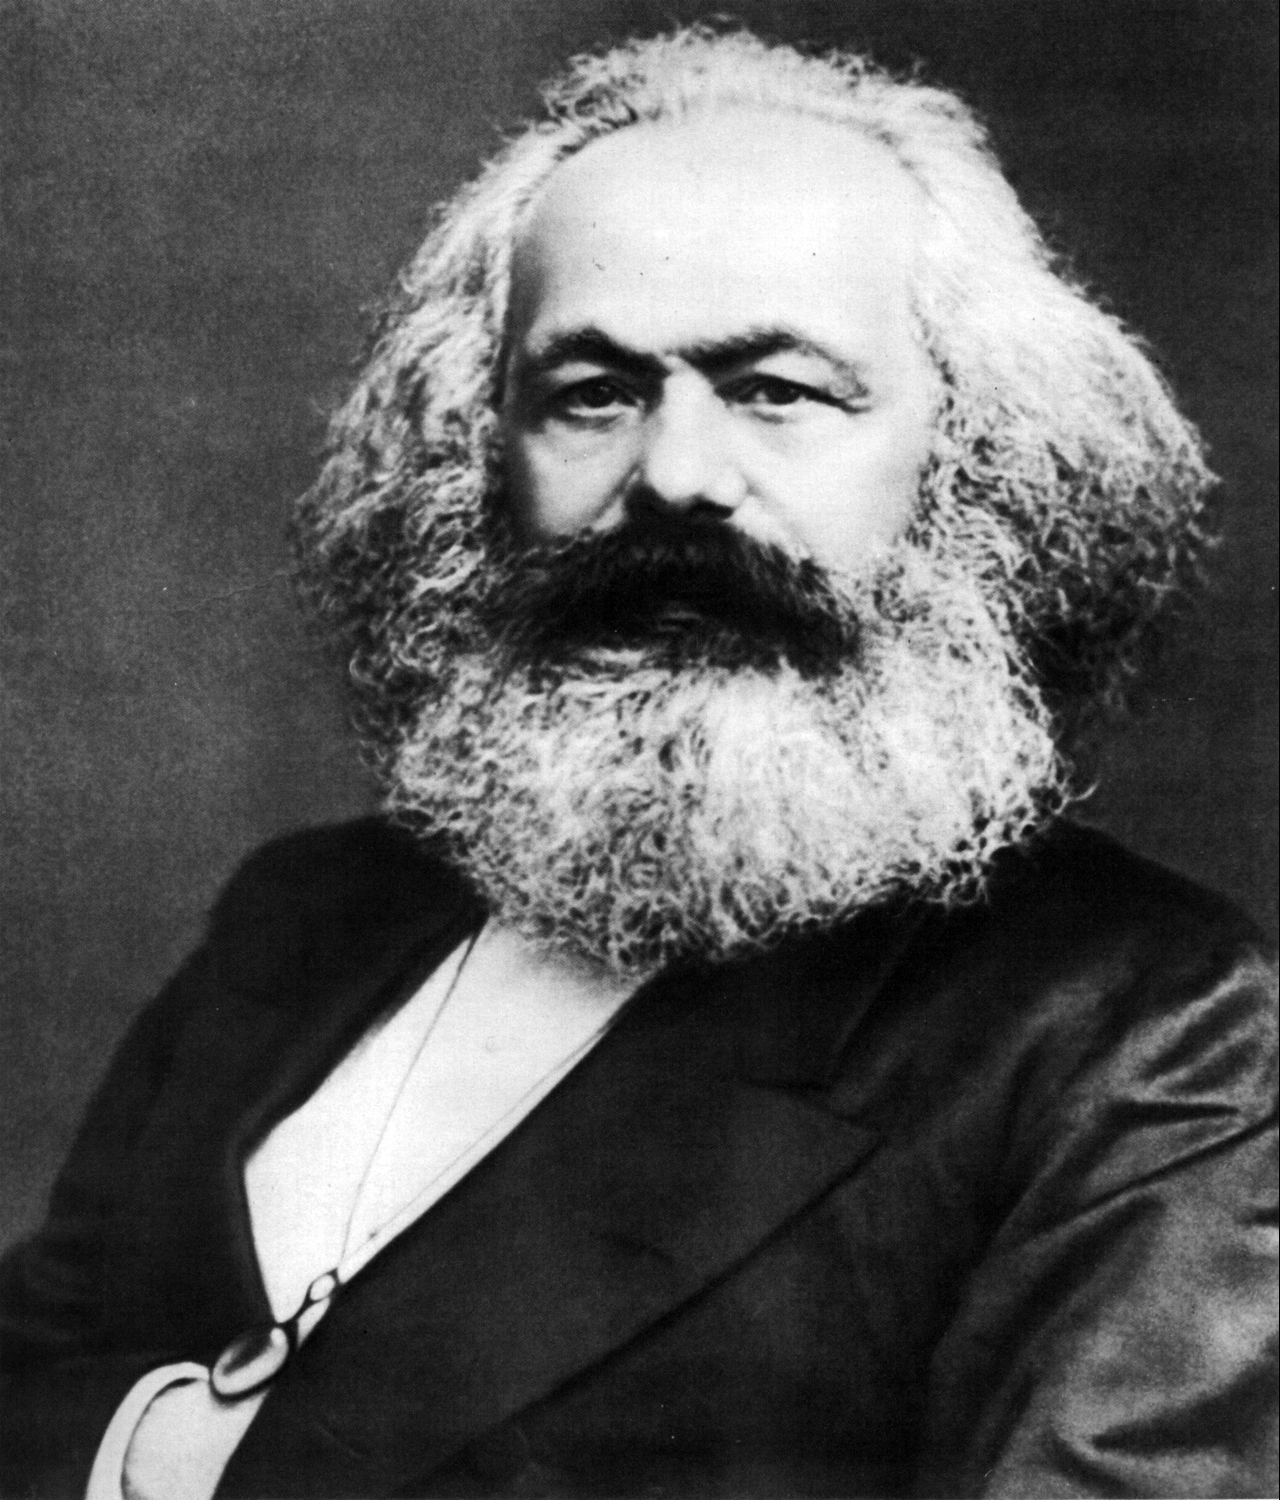 Engels et Marx